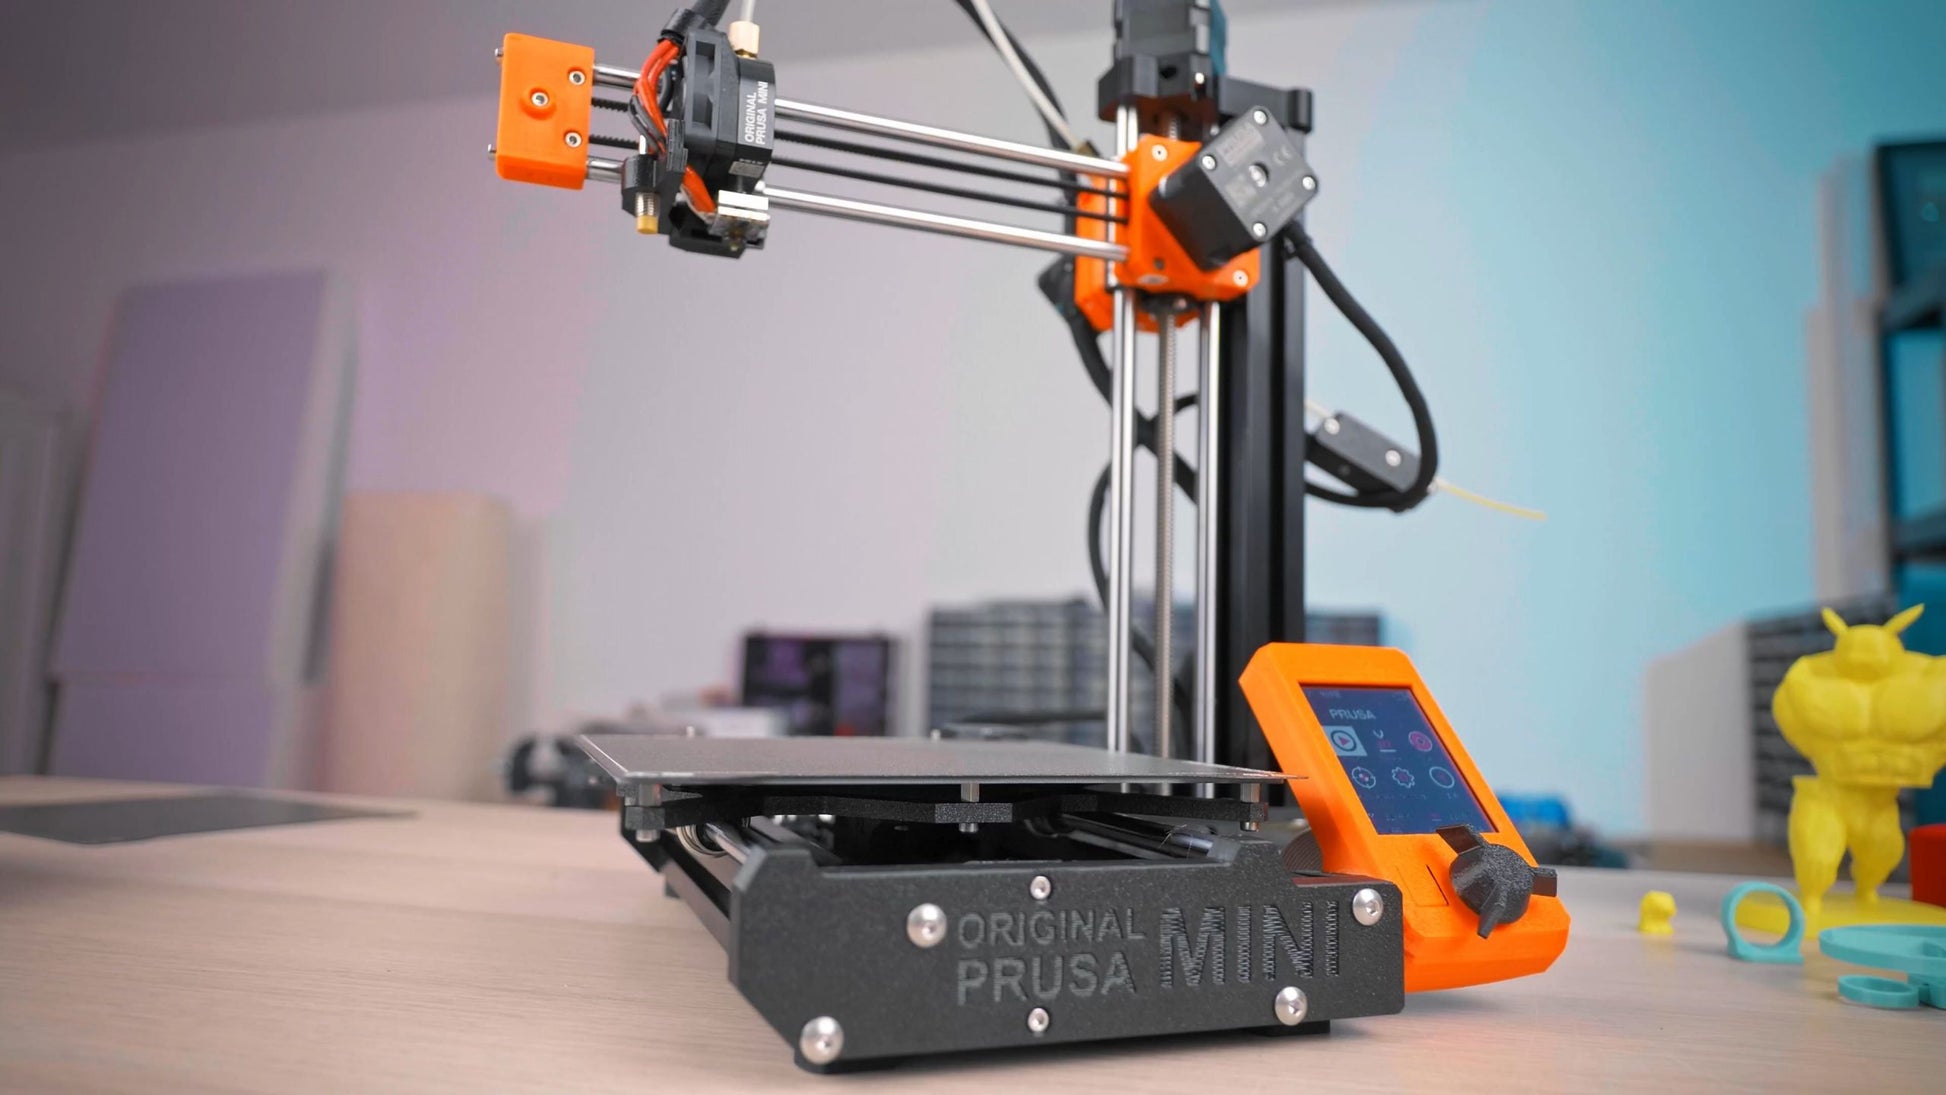 Pachet promoțional imprimantă 3D Prusa MINI+ 10 filamente